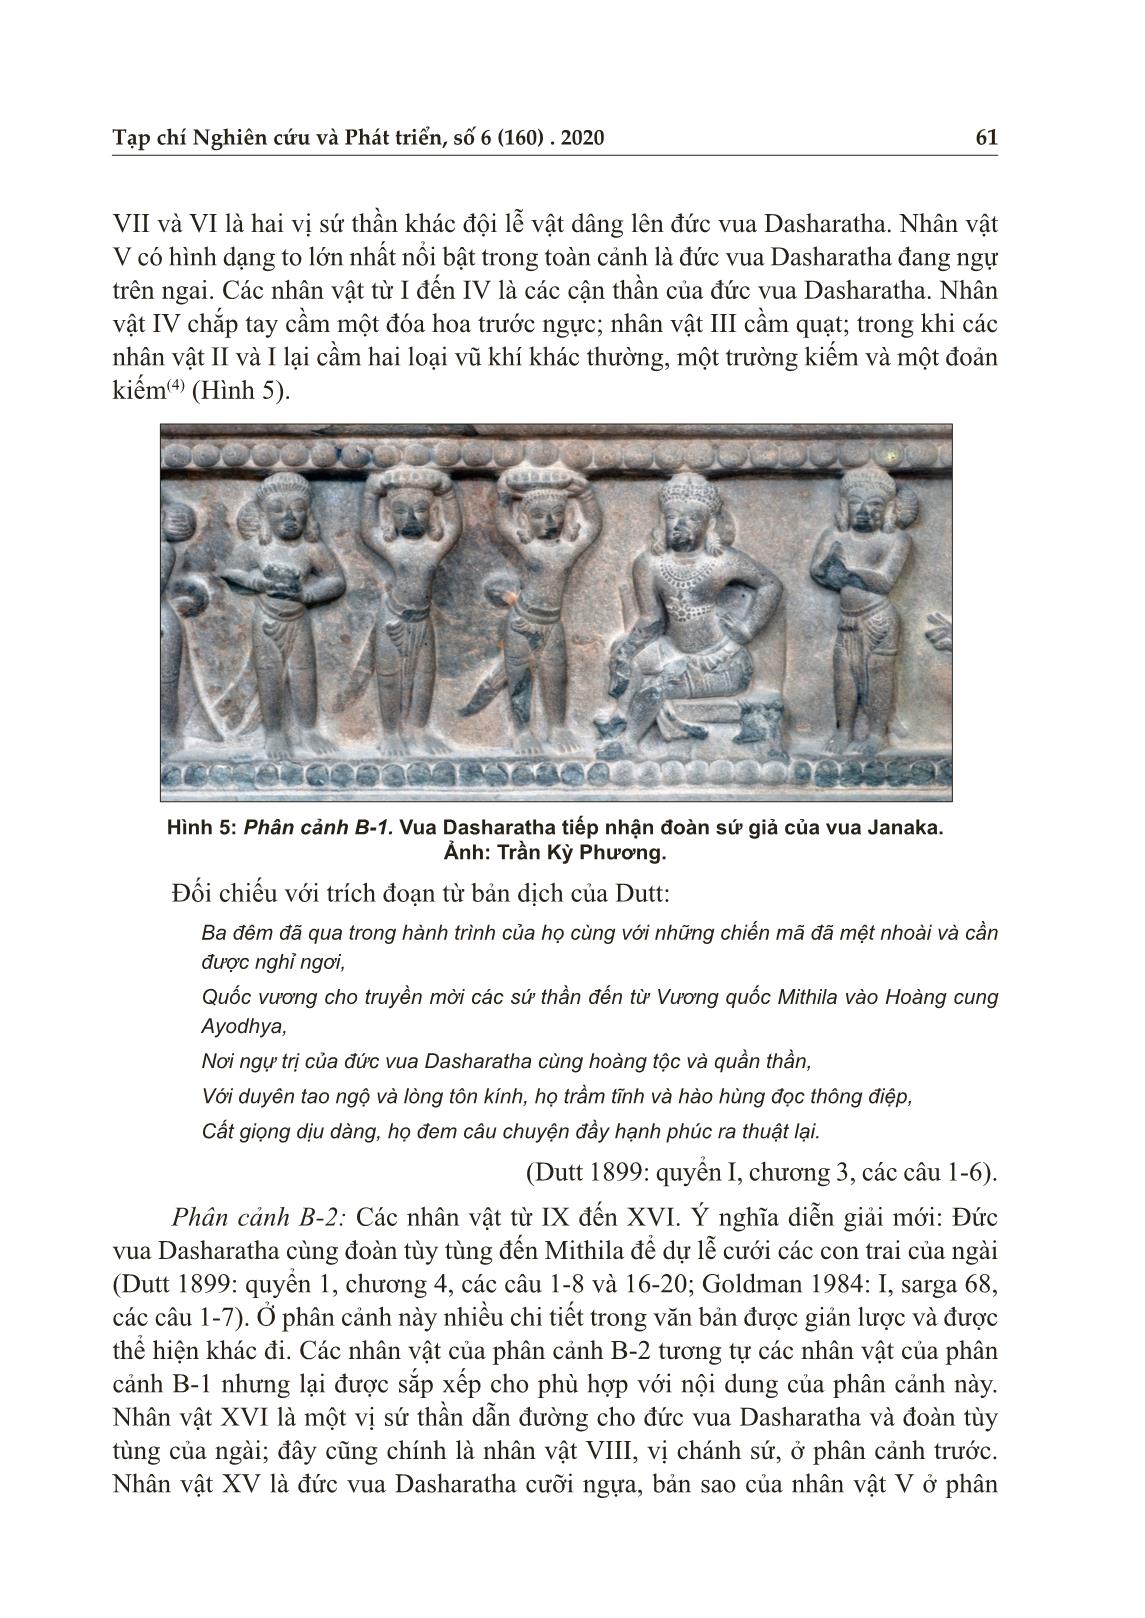 Sử thi Ramayana trong nghệ thuật Champa: “Lễ cưới công chúa Sita” thể hiện trên đài thờ Trà Kiệu trang 7